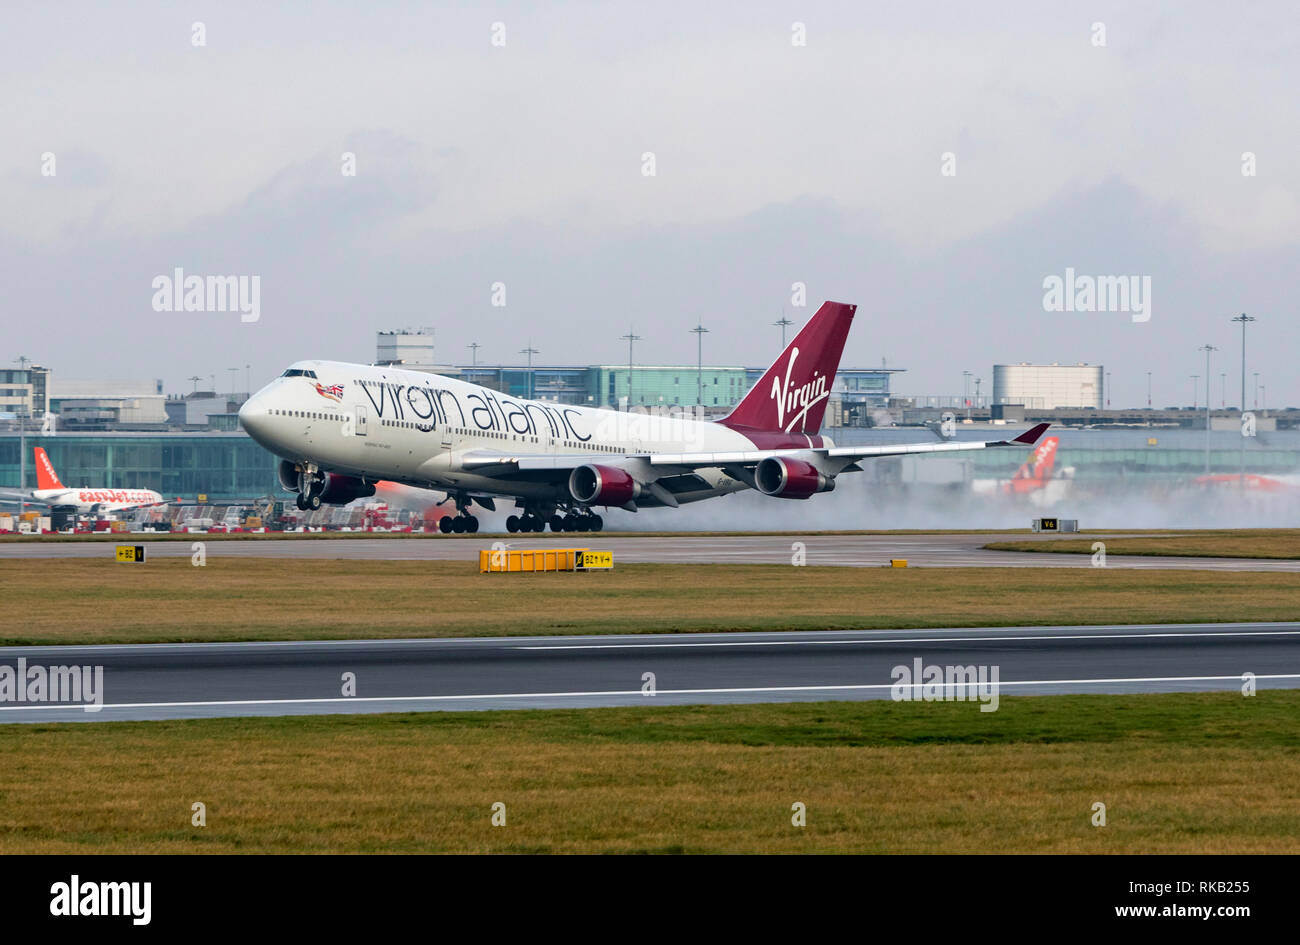 Virgin Alantic Boeing 747-400, G-VBIG, named Tinker Belle, takes off at ...